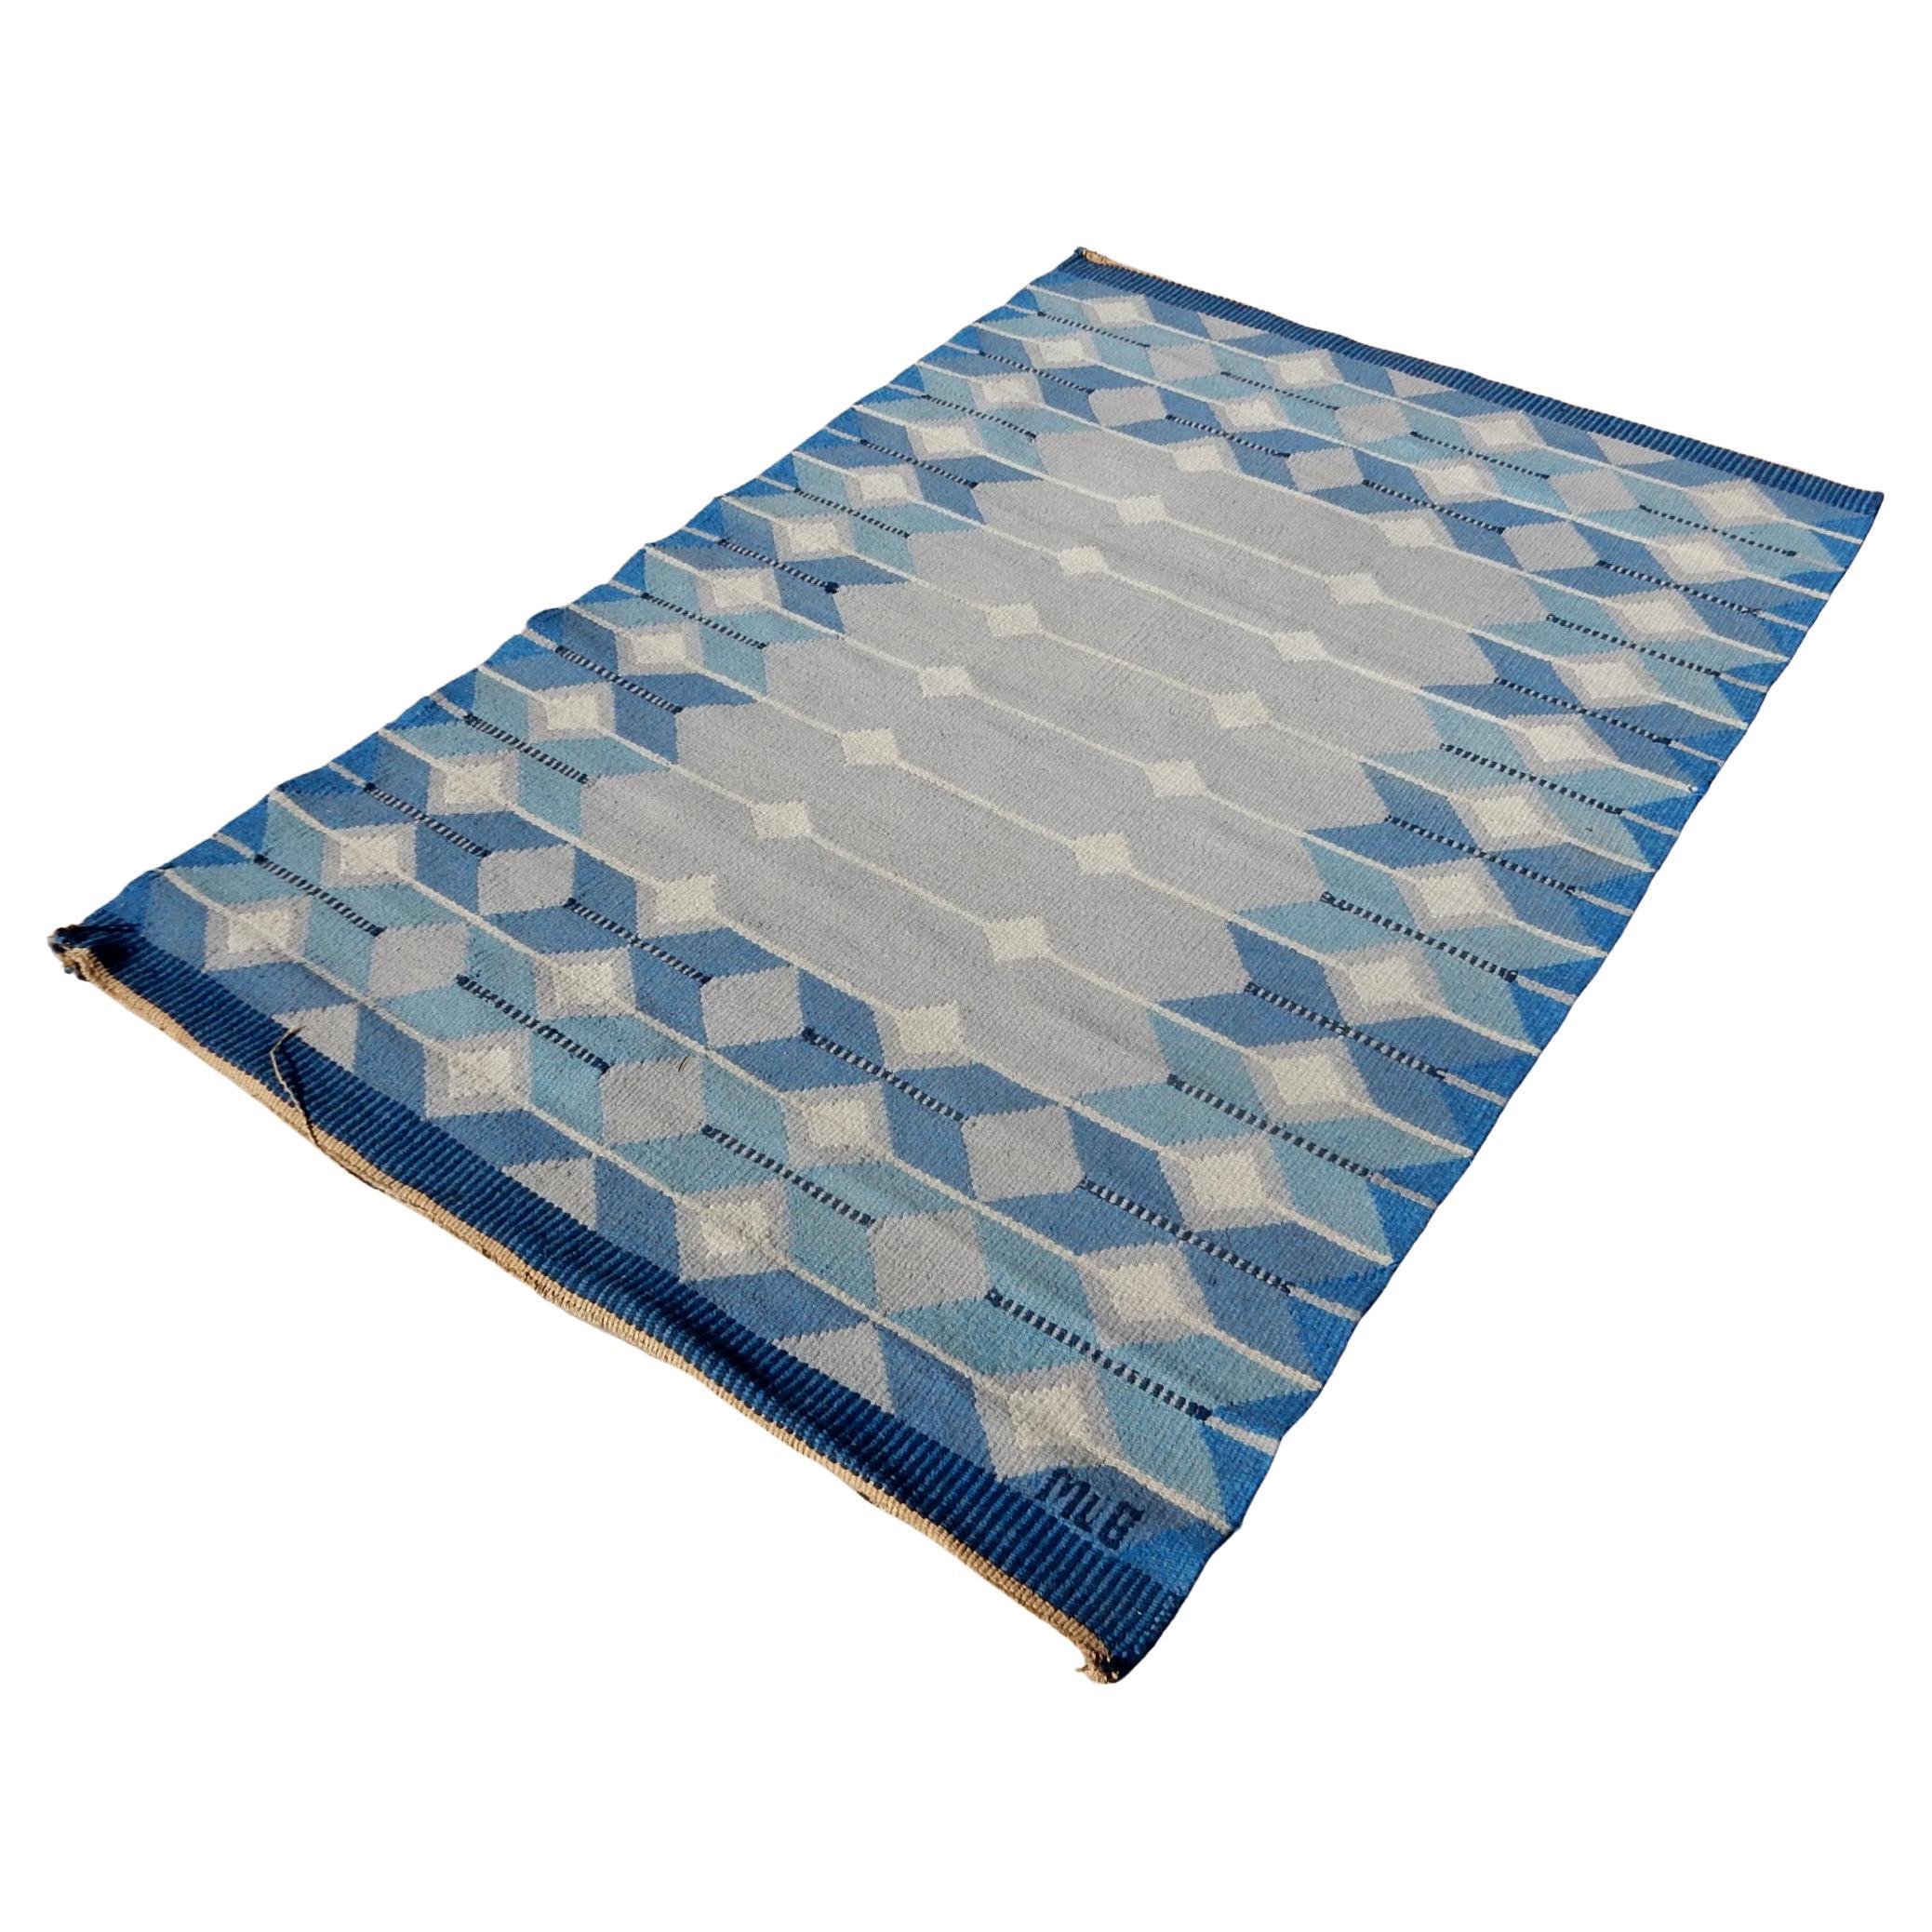 Außergewöhnlicher schwedischer Flachgewebe-Kilim-Teppich.
Wunderschöne Blau- und Weißtöne in einem hypnotisierenden geometrischen Design.
Signiert von der Weberin 